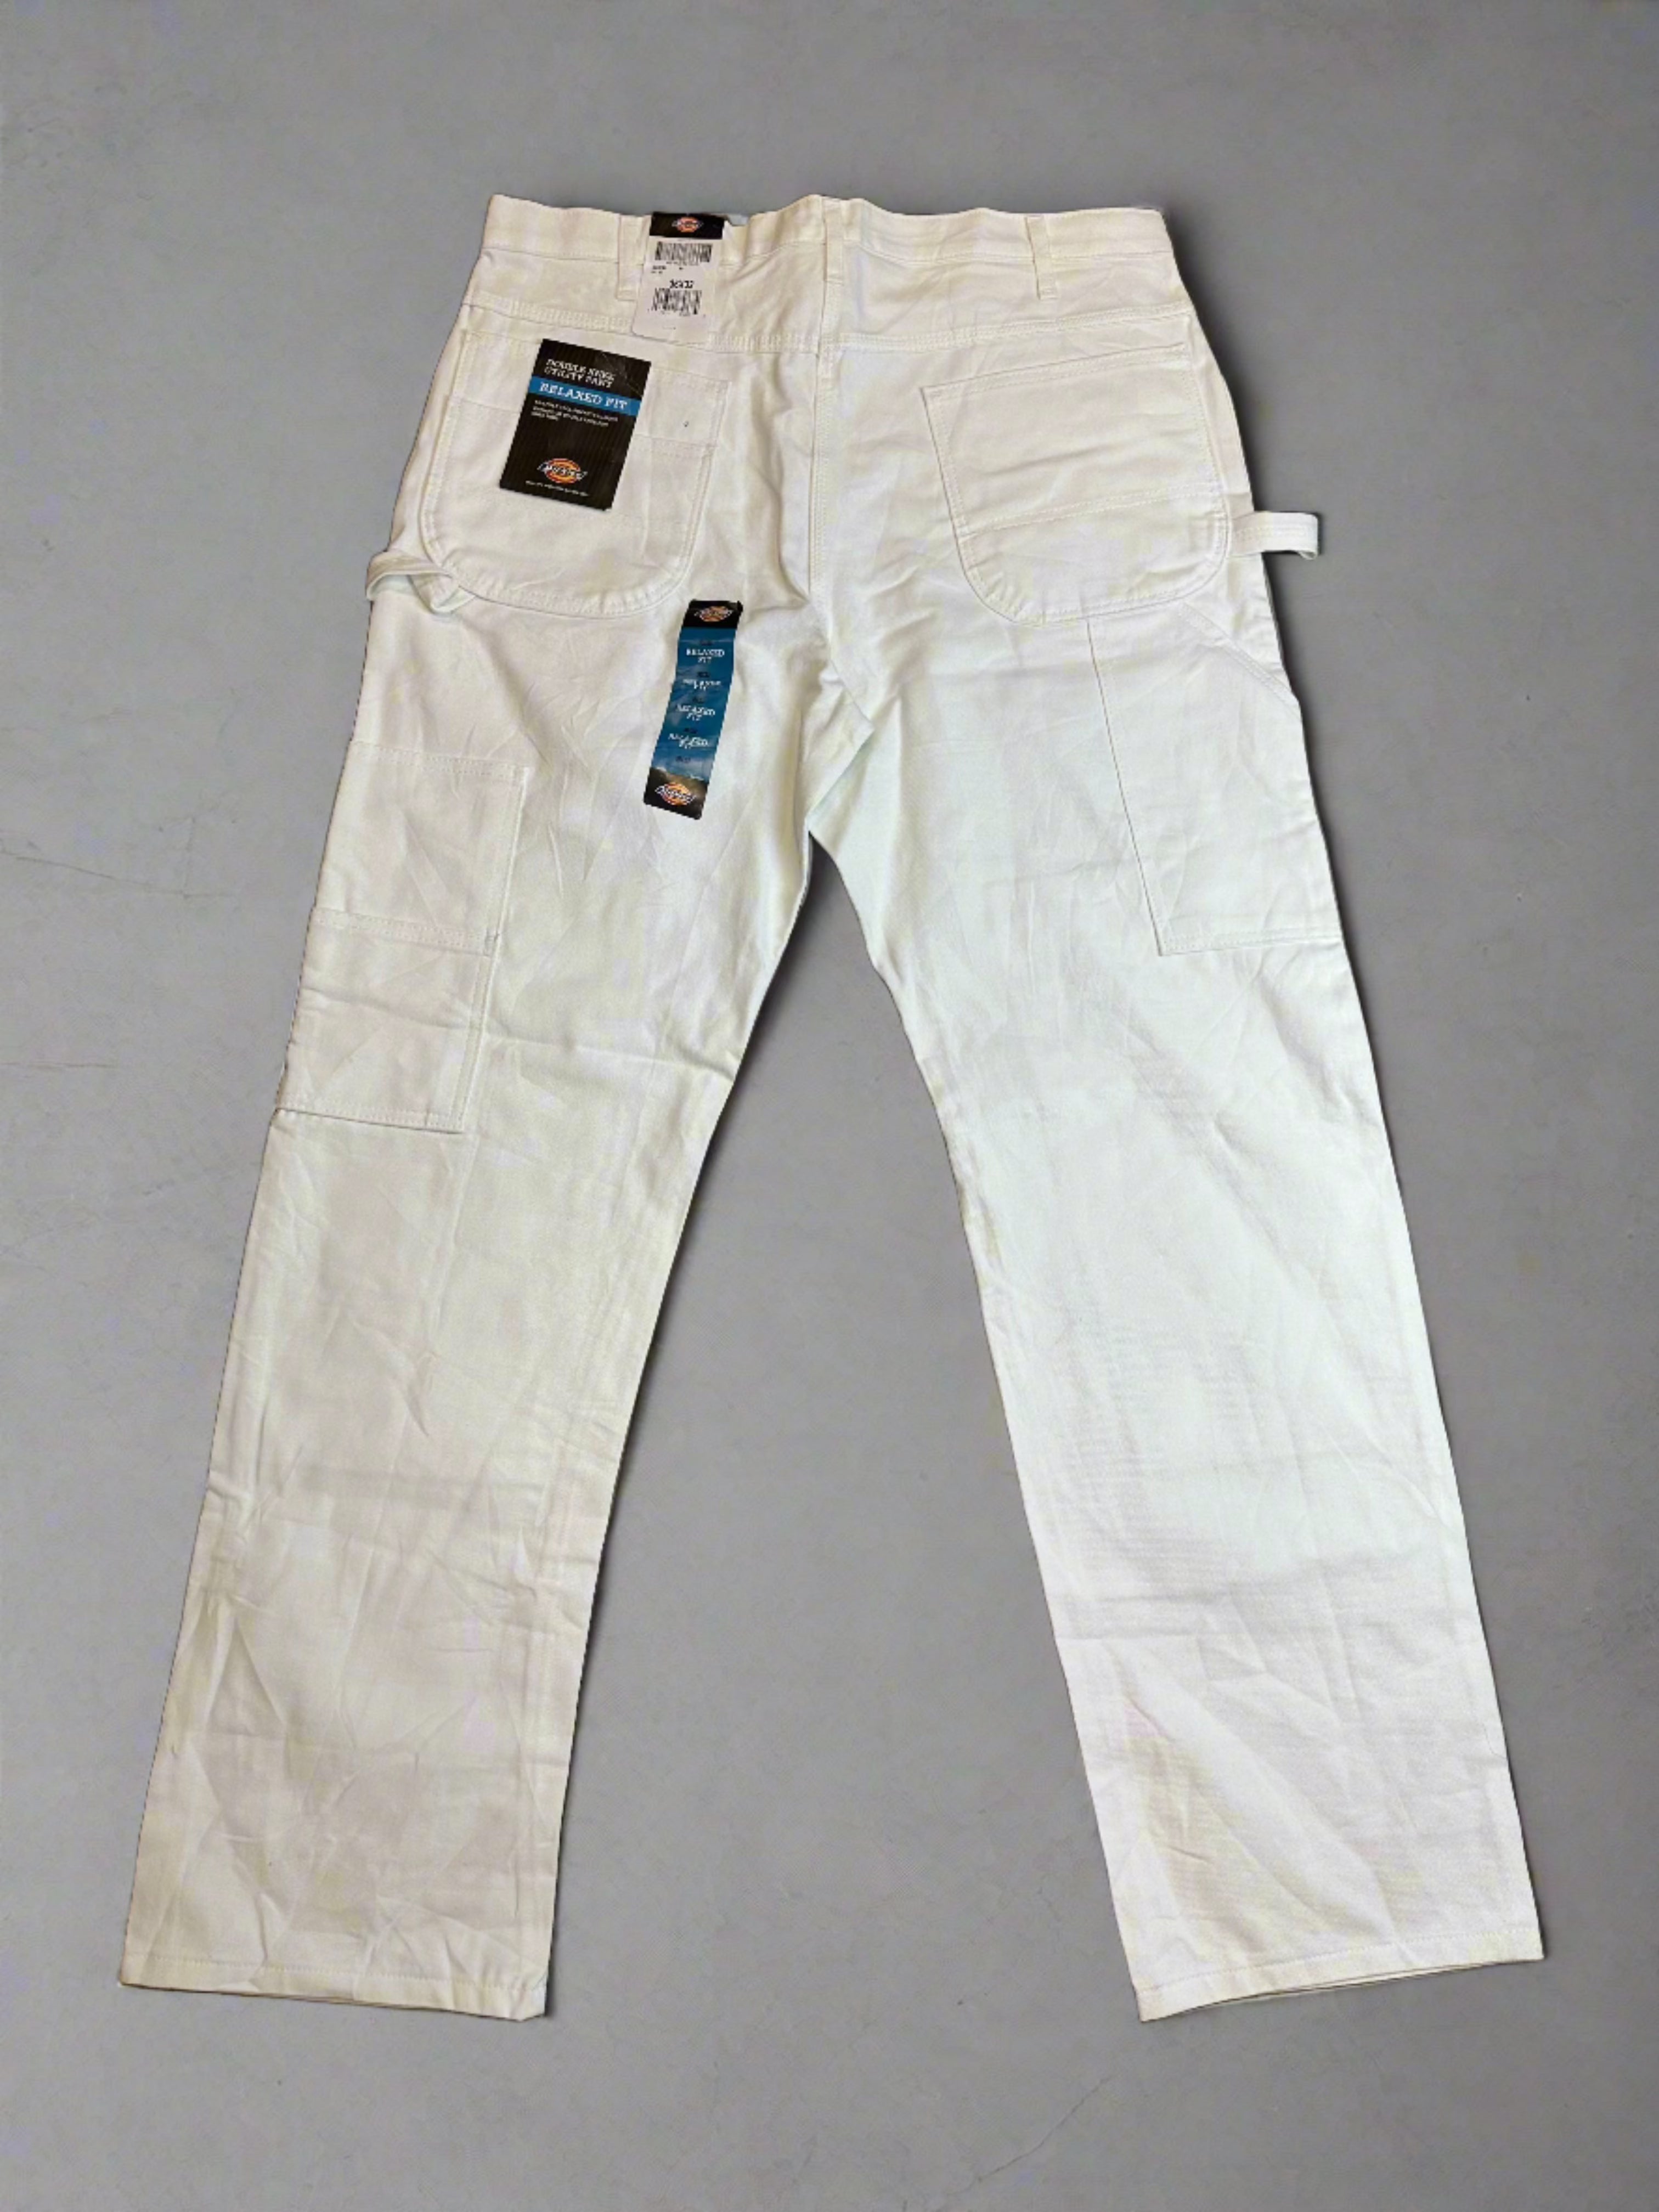 Vintage Dickies Double Knee Pants - size 36x32